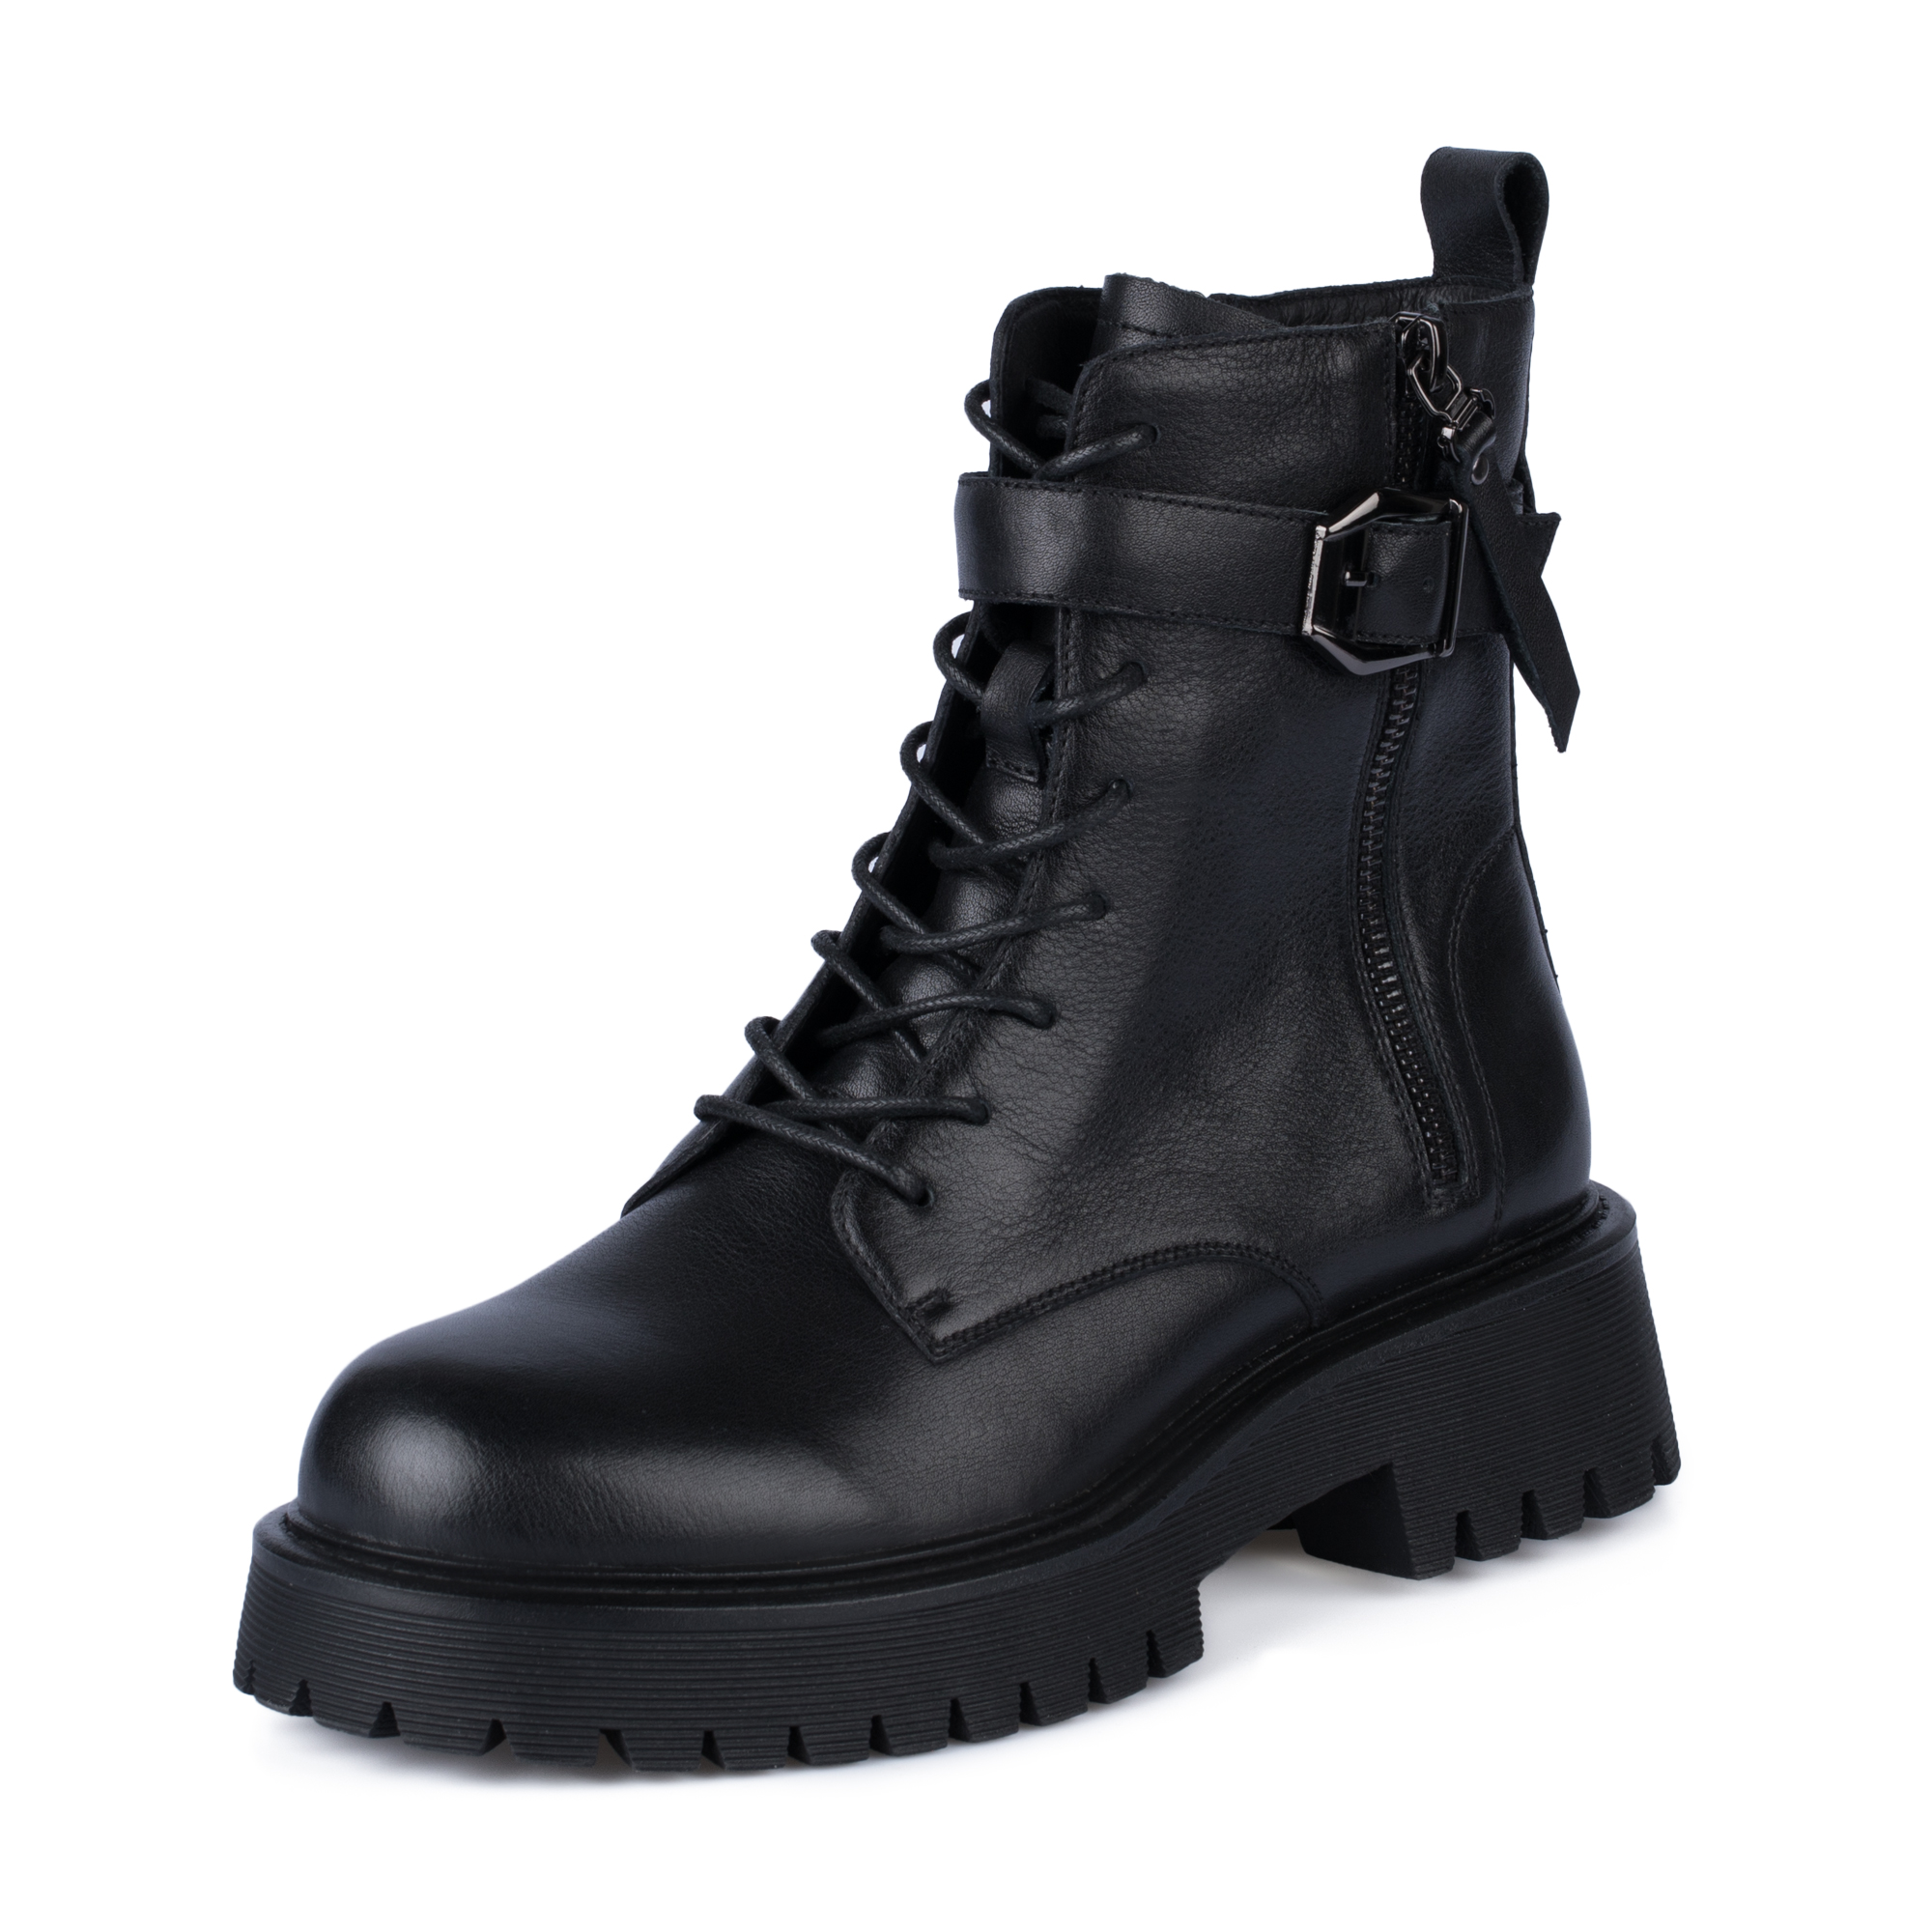 Ботинки Thomas Munz 058-991A-2102, цвет черный, размер 37 - фото 2